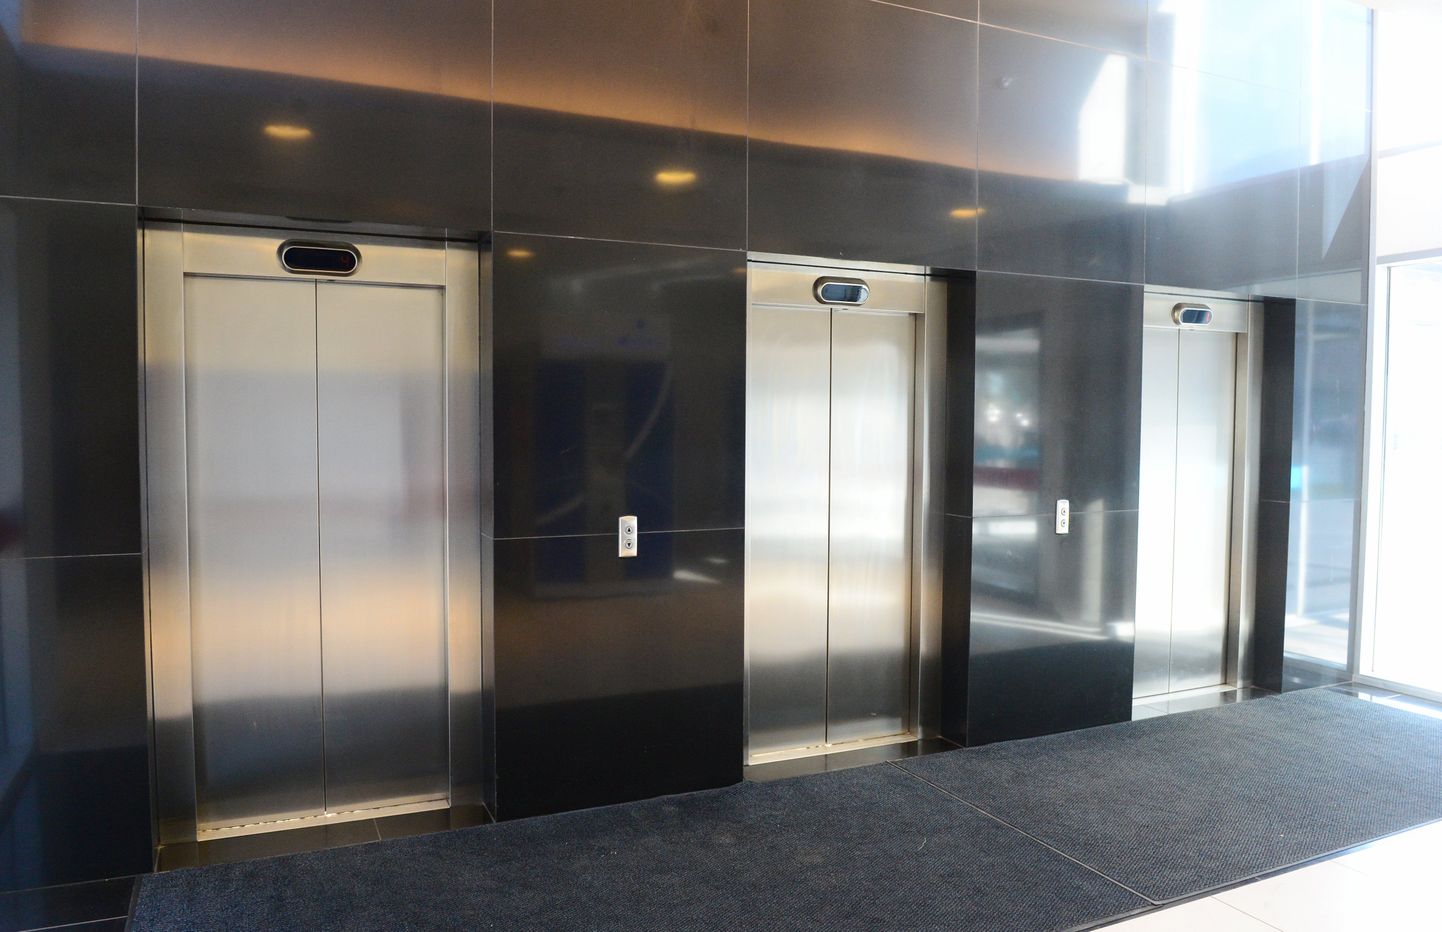 Pildil Tasku keskuse liftid, millest ühte jäid emadepäeval kinni neli inimest.